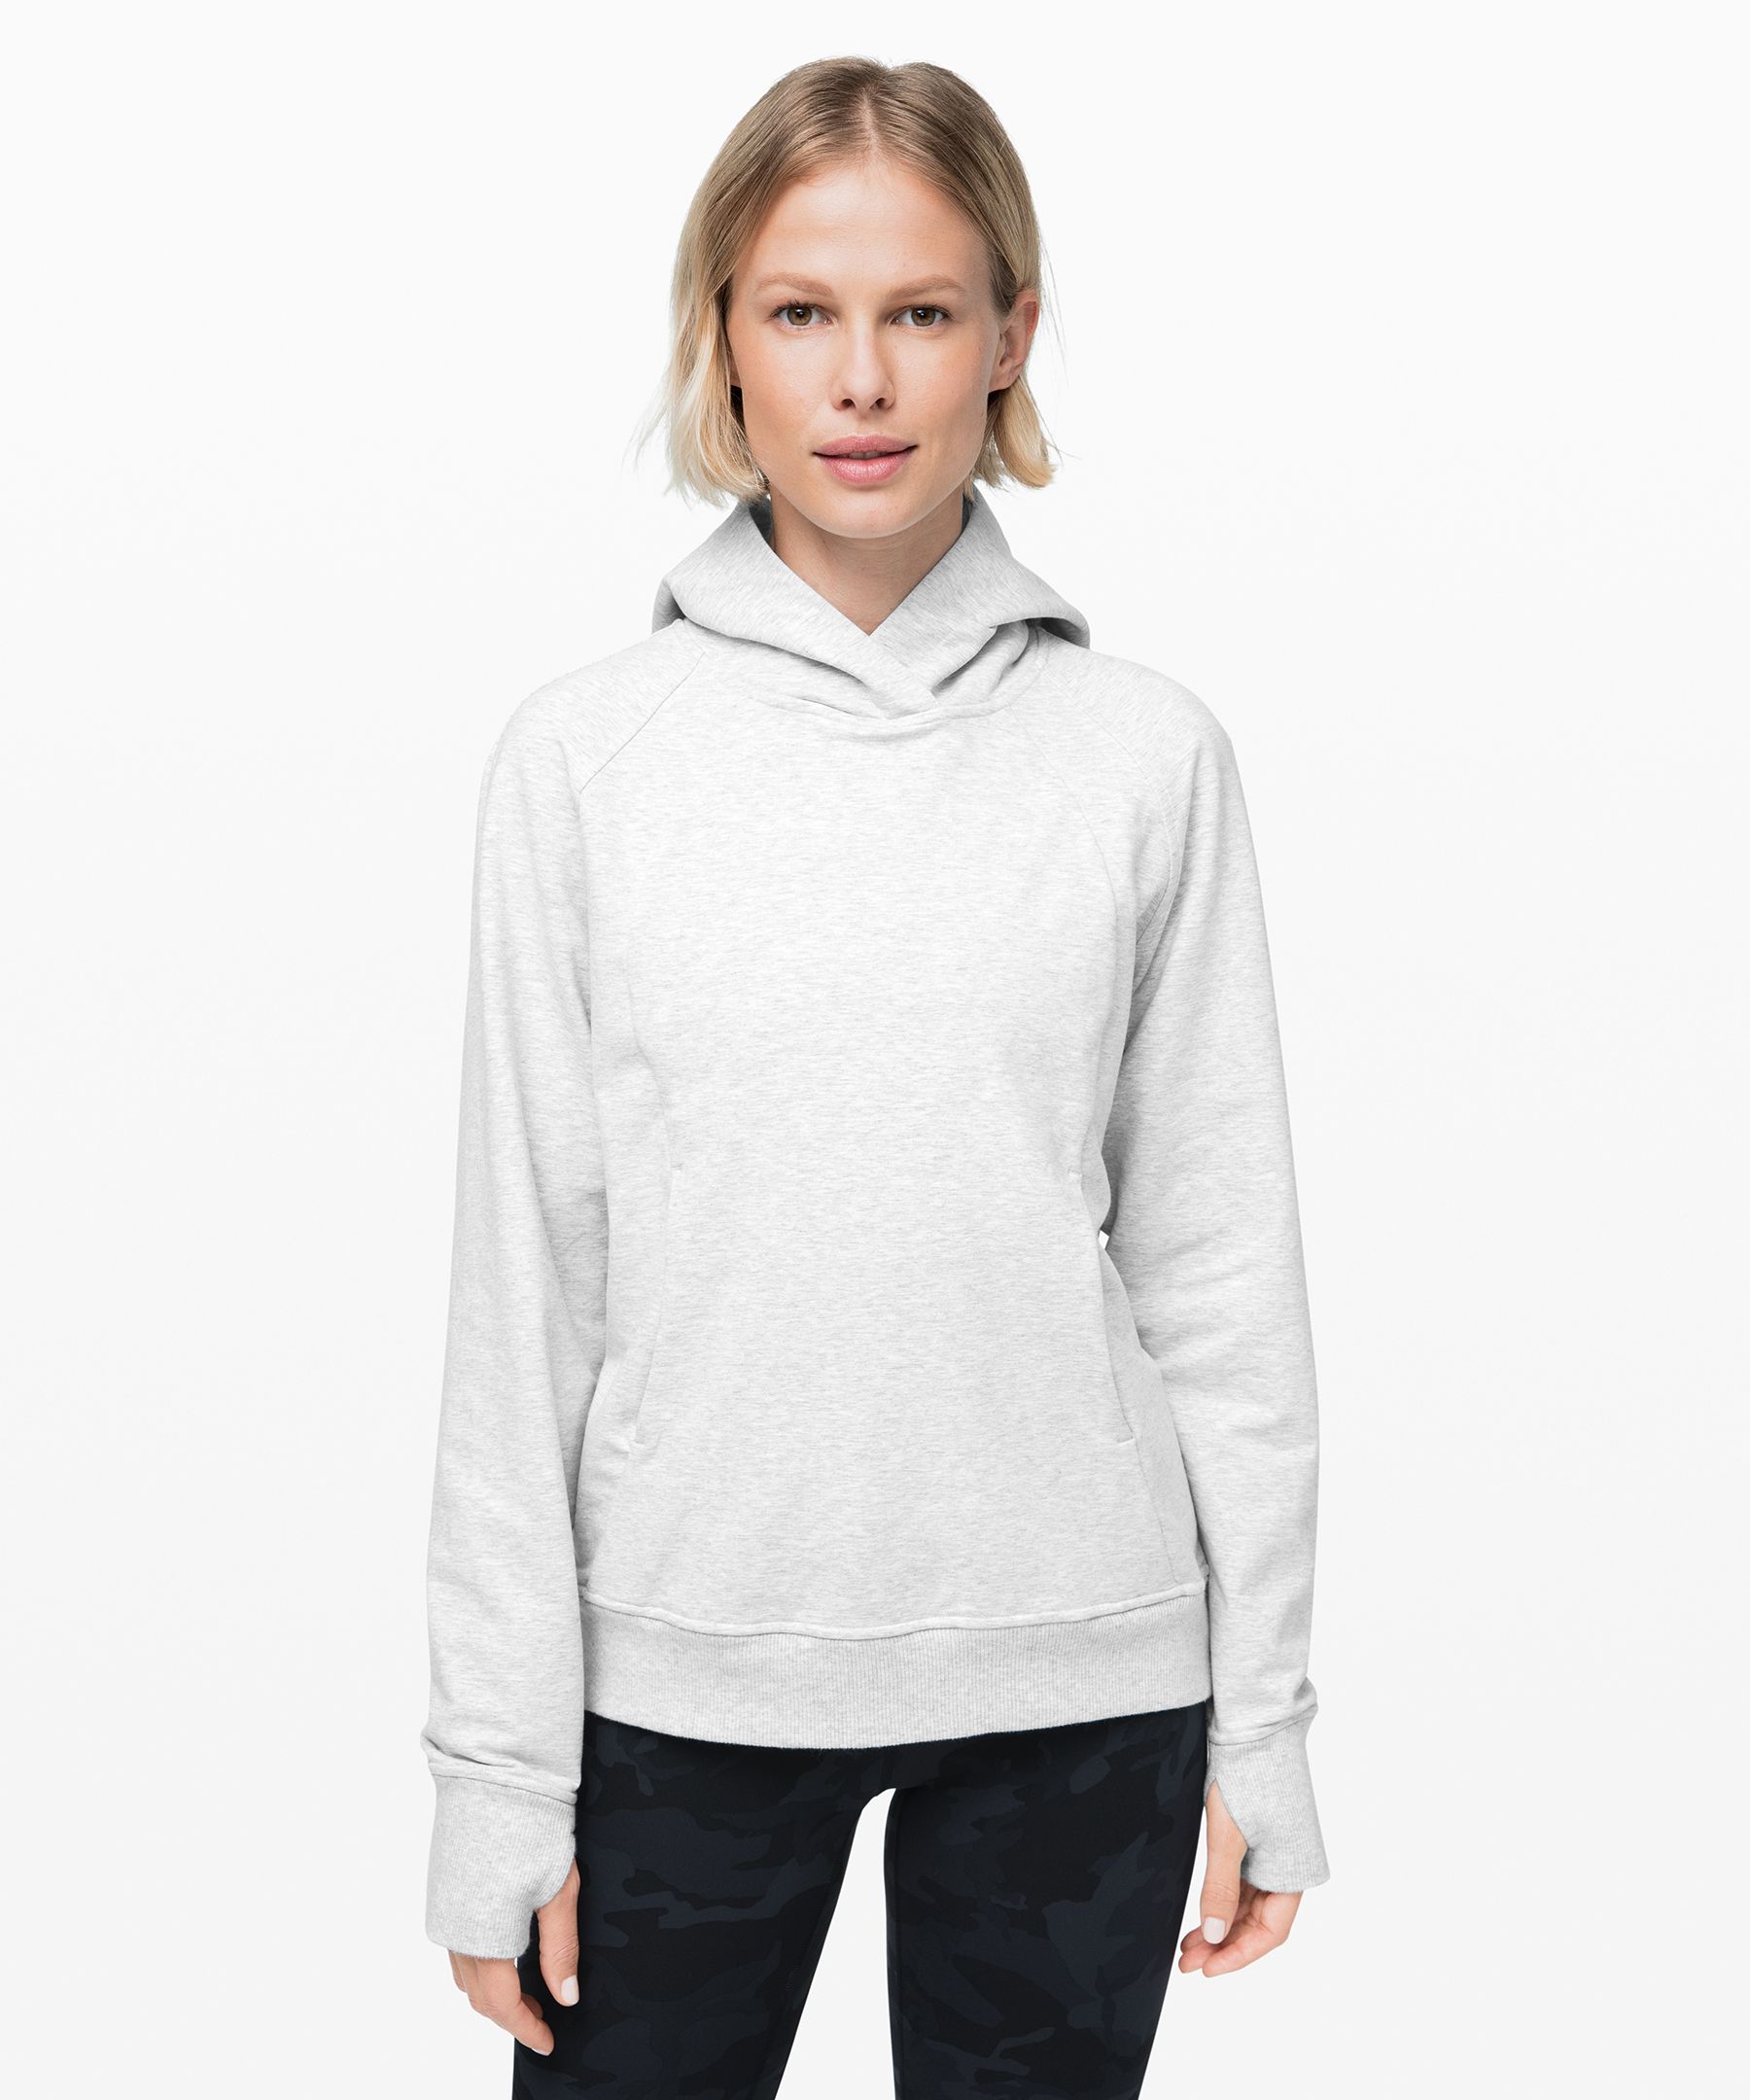 lululemon turtleneck sweatshirt